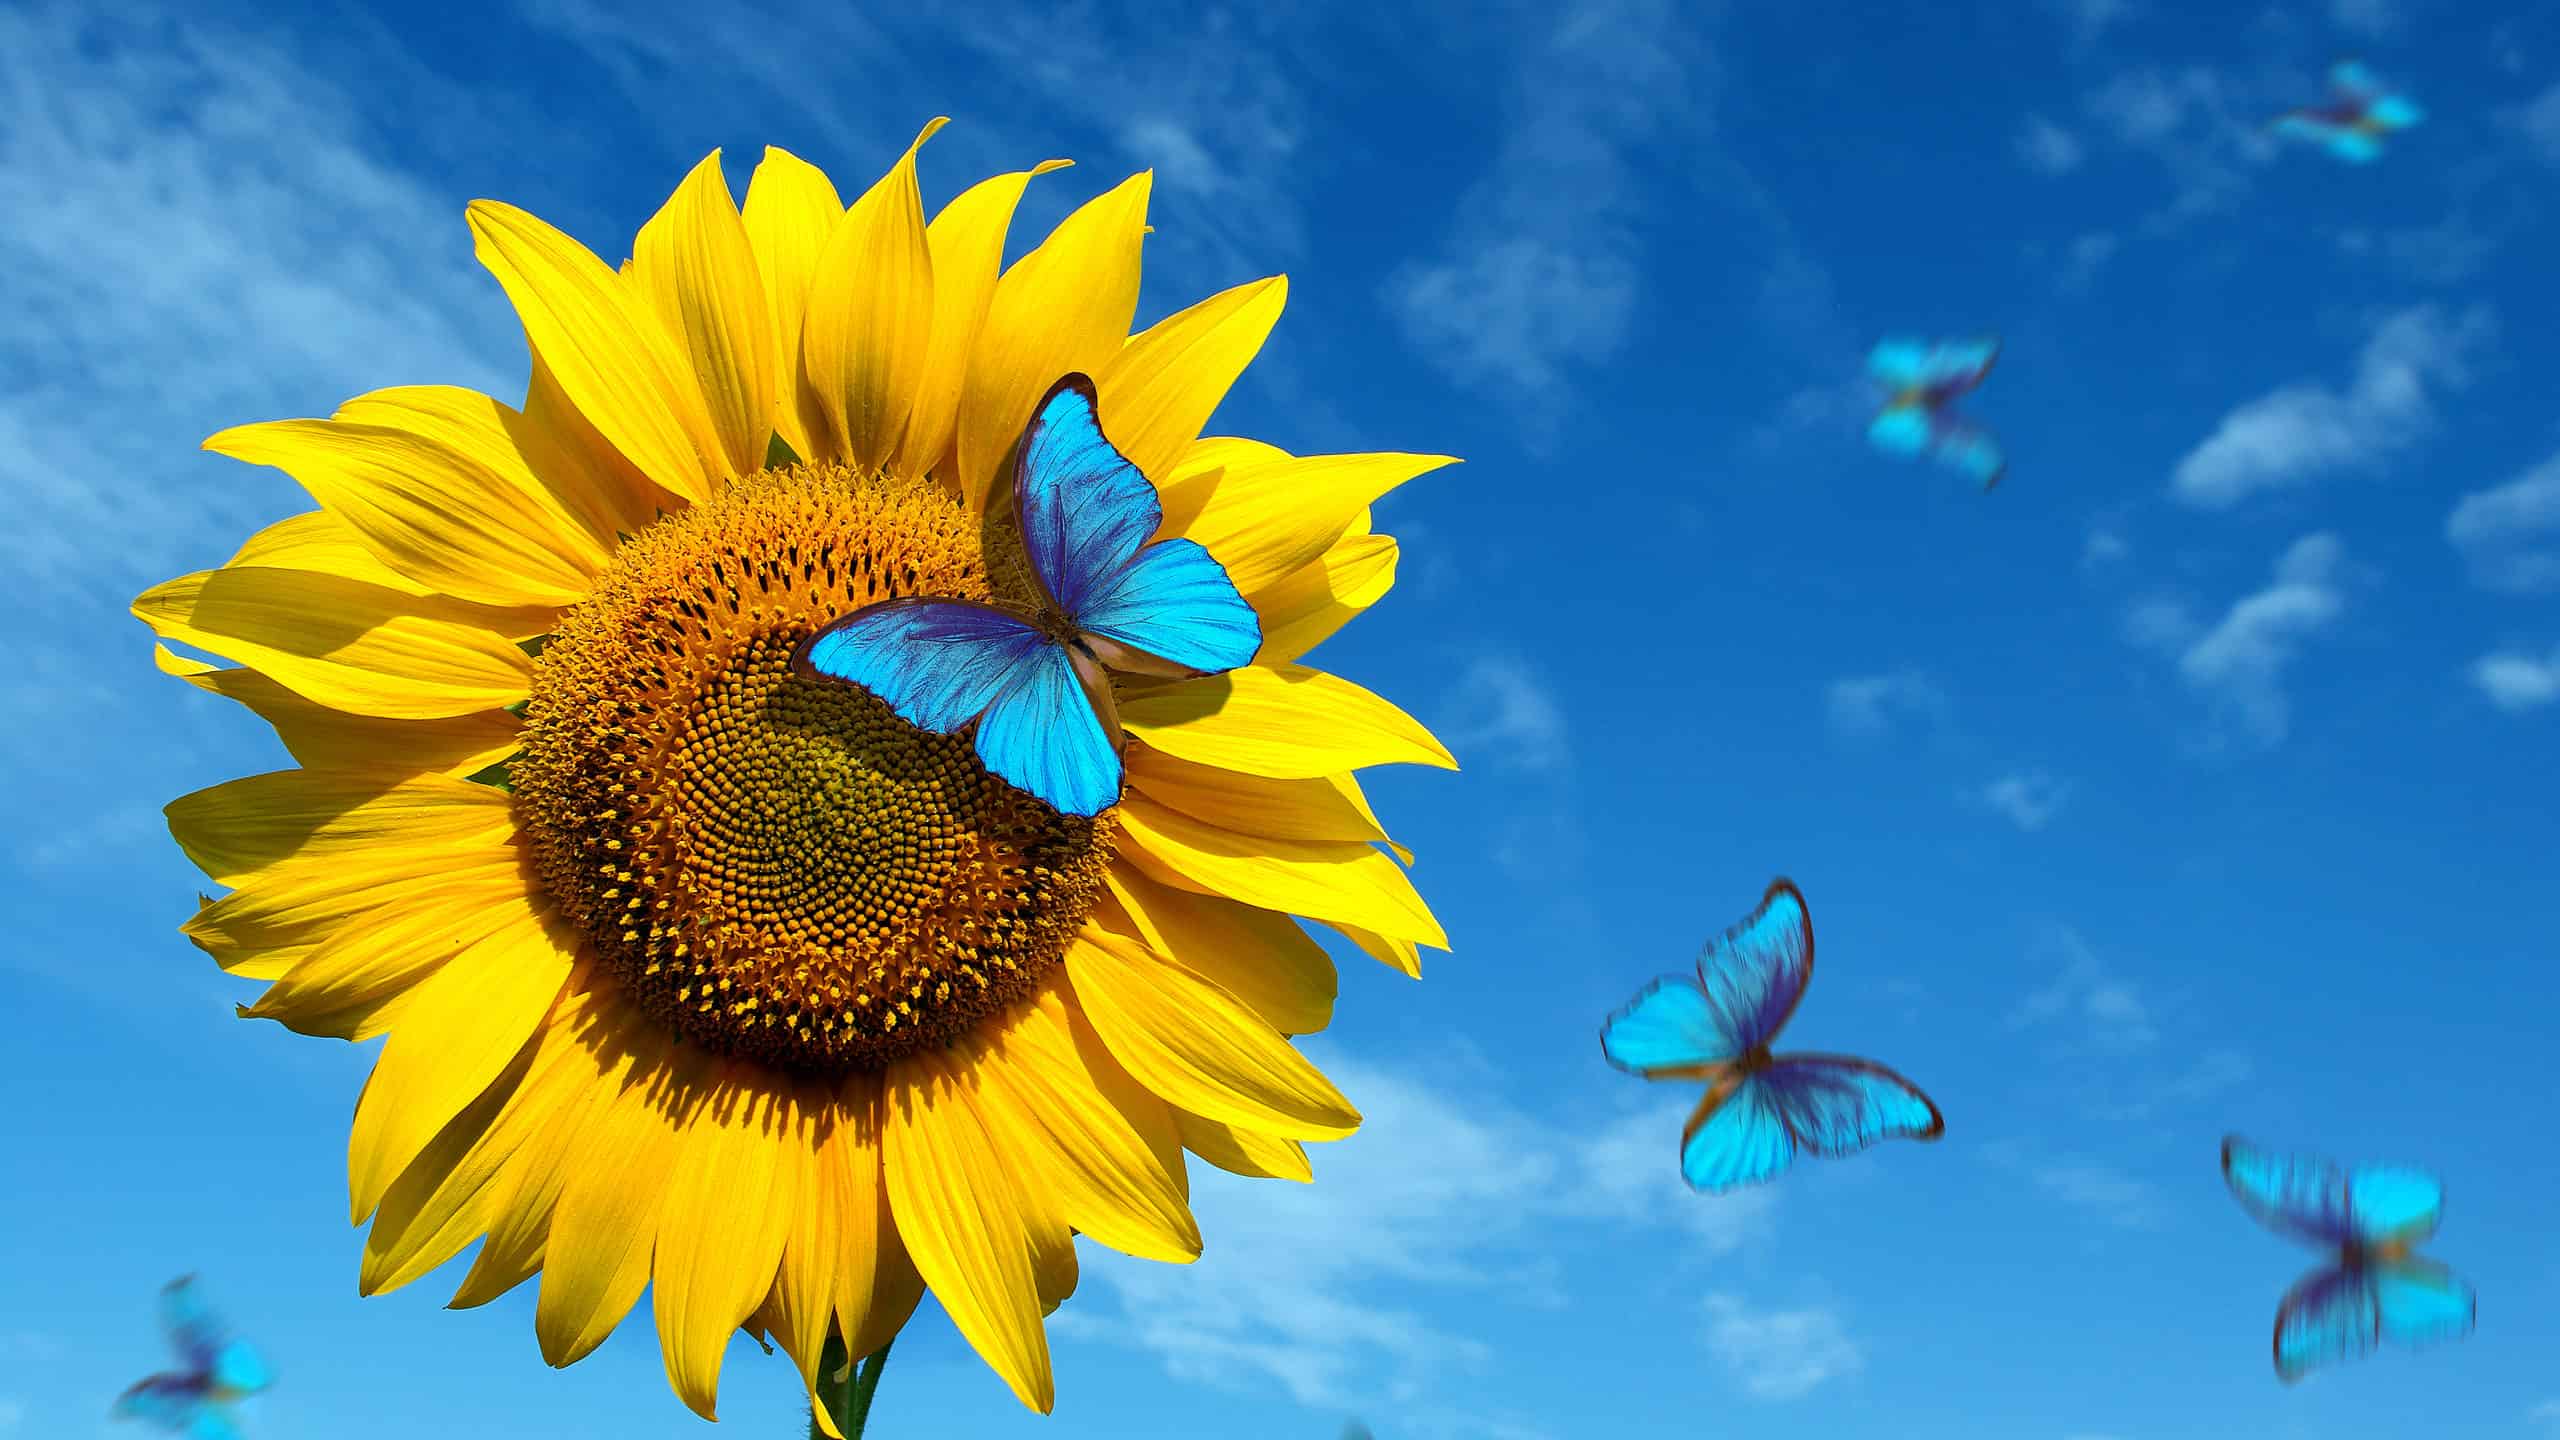 Blue Butterflies on a Yellow Sunflower Against a Blue Sky